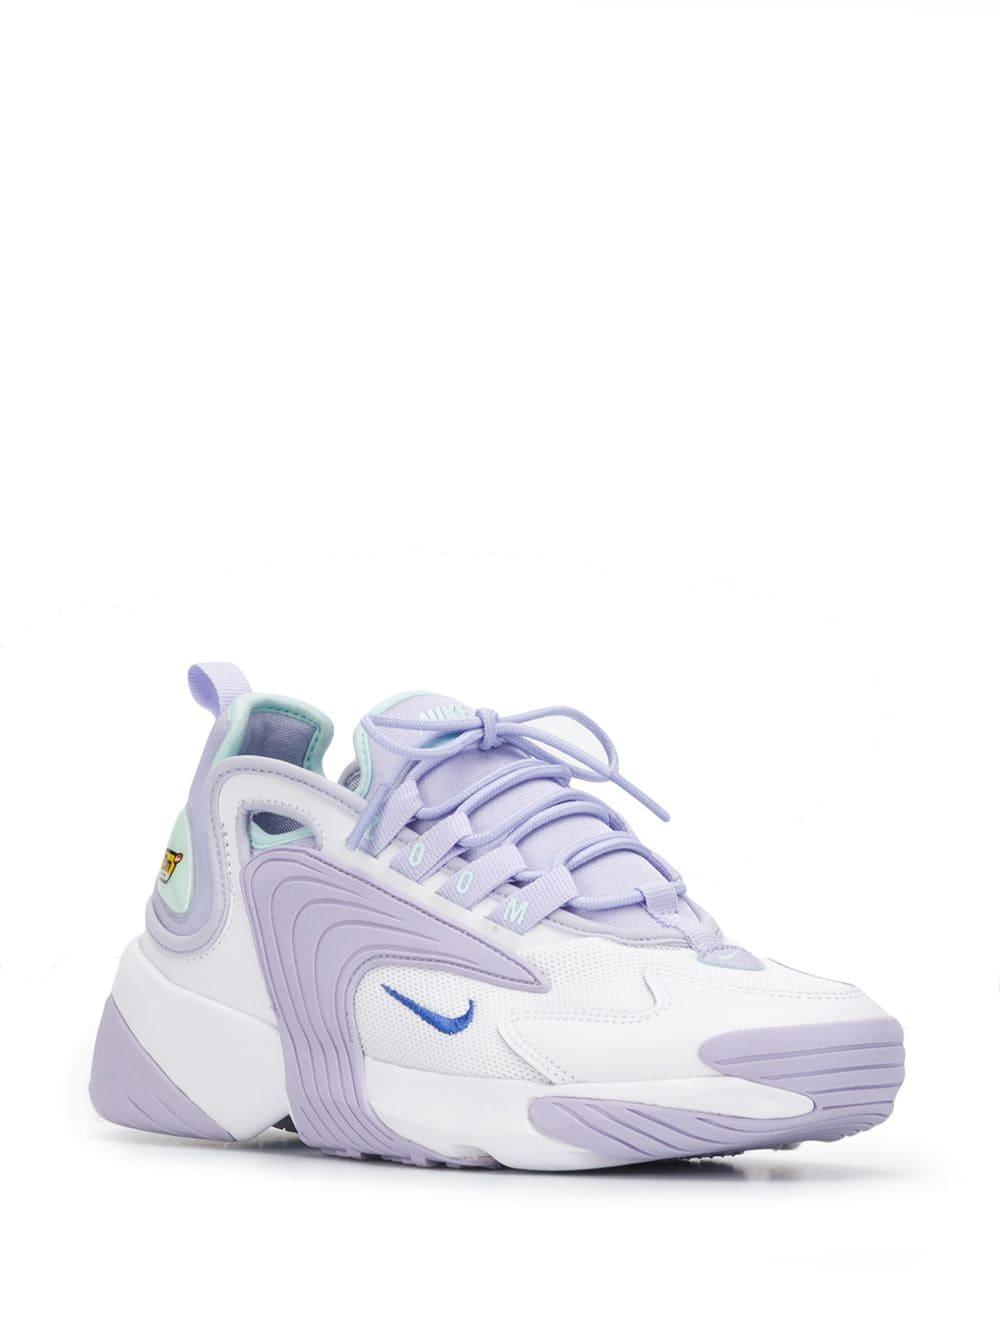 nike lilac zoom 2k sneakers